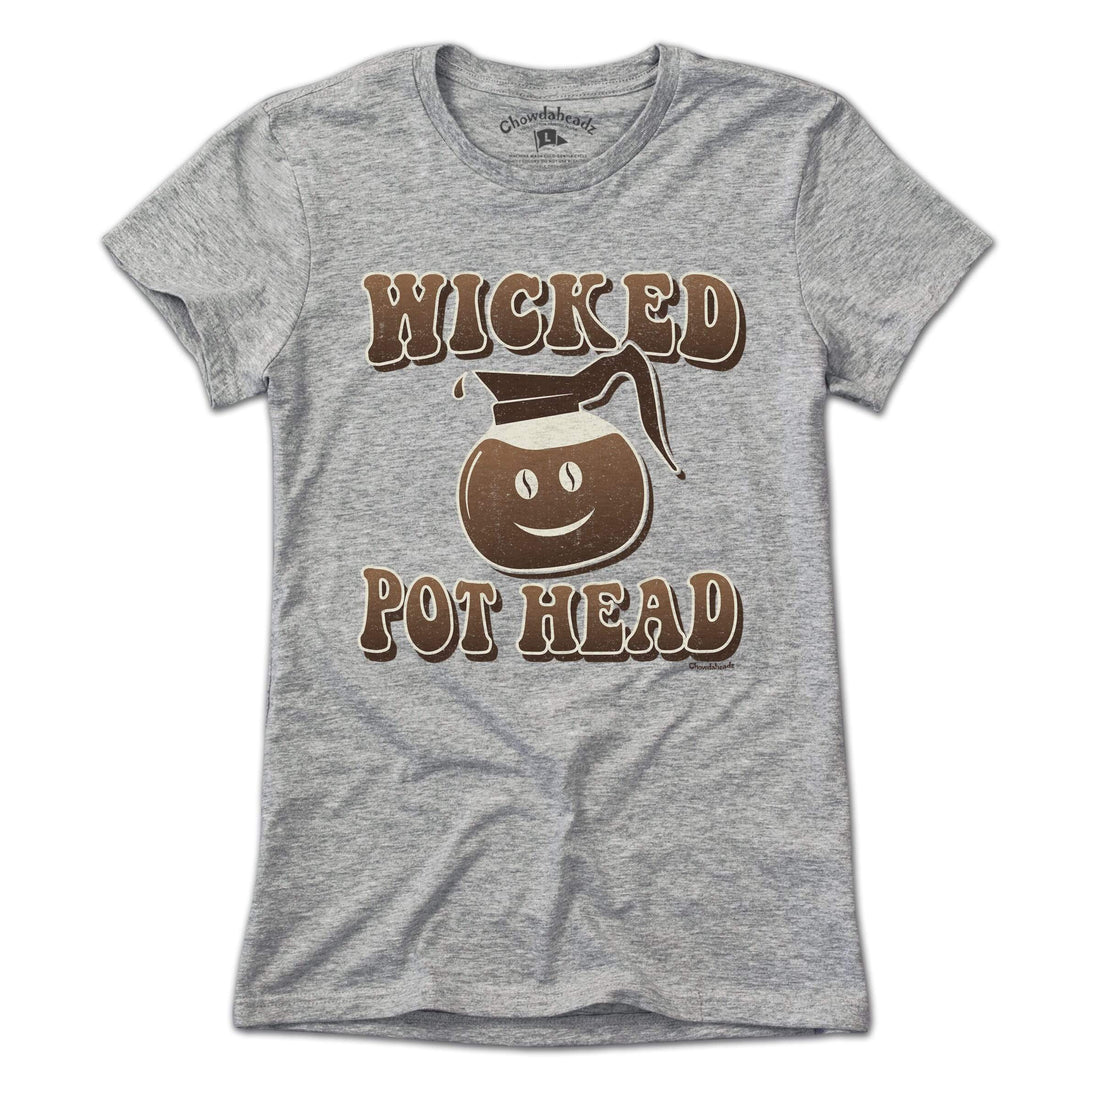 Wicked Coffee Pot Head T-Shirt - Chowdaheadz